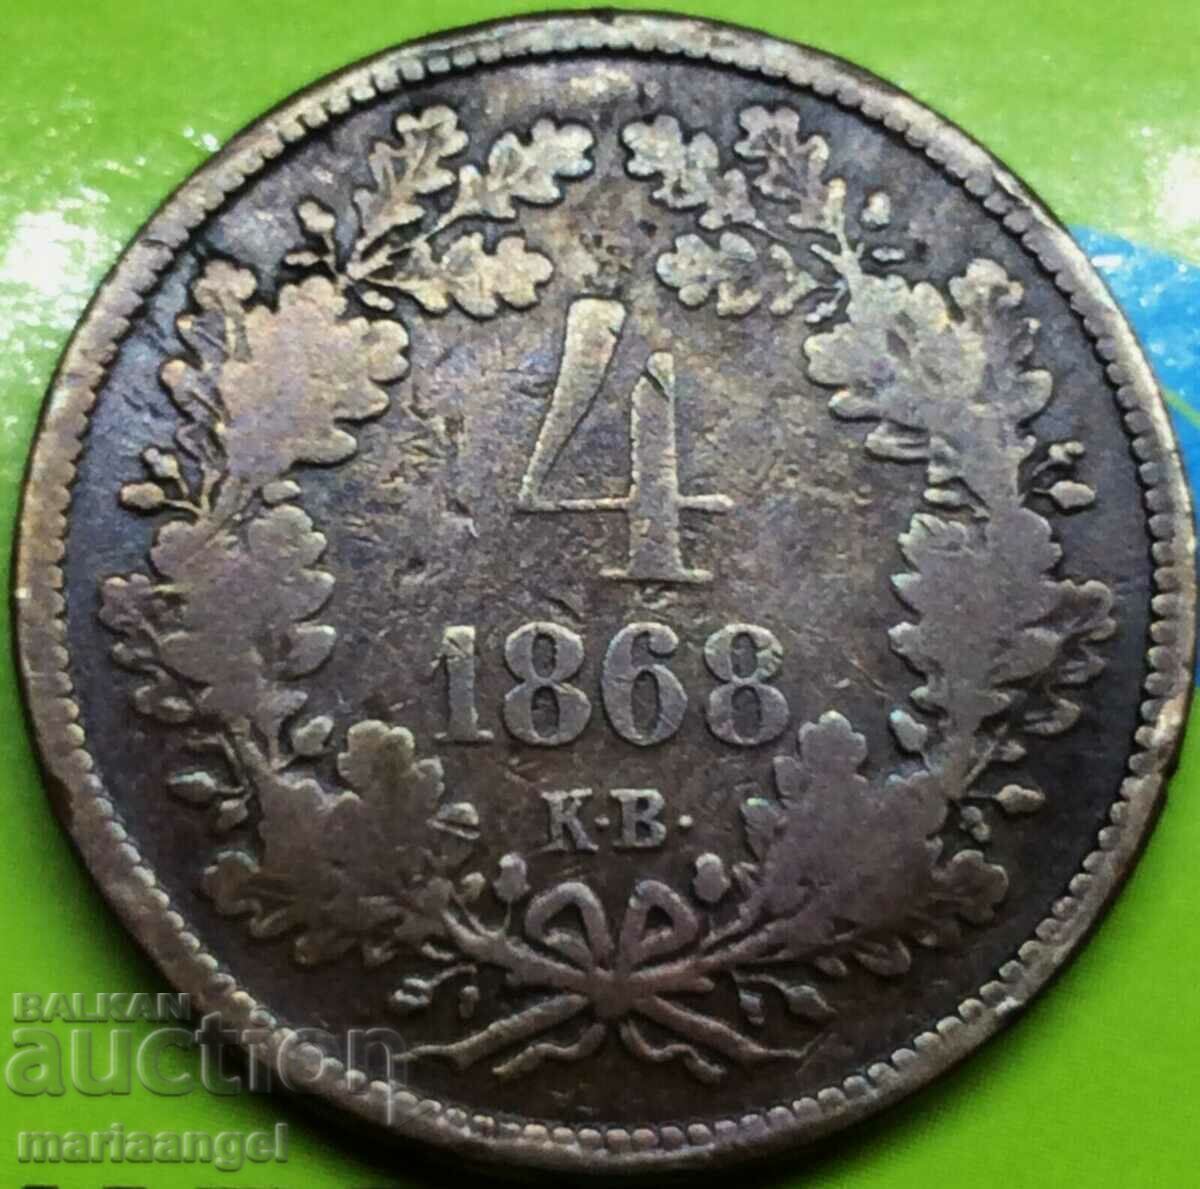 Ungaria 4 Kreuzers 1868 KV Original 13.19g - destul de rar